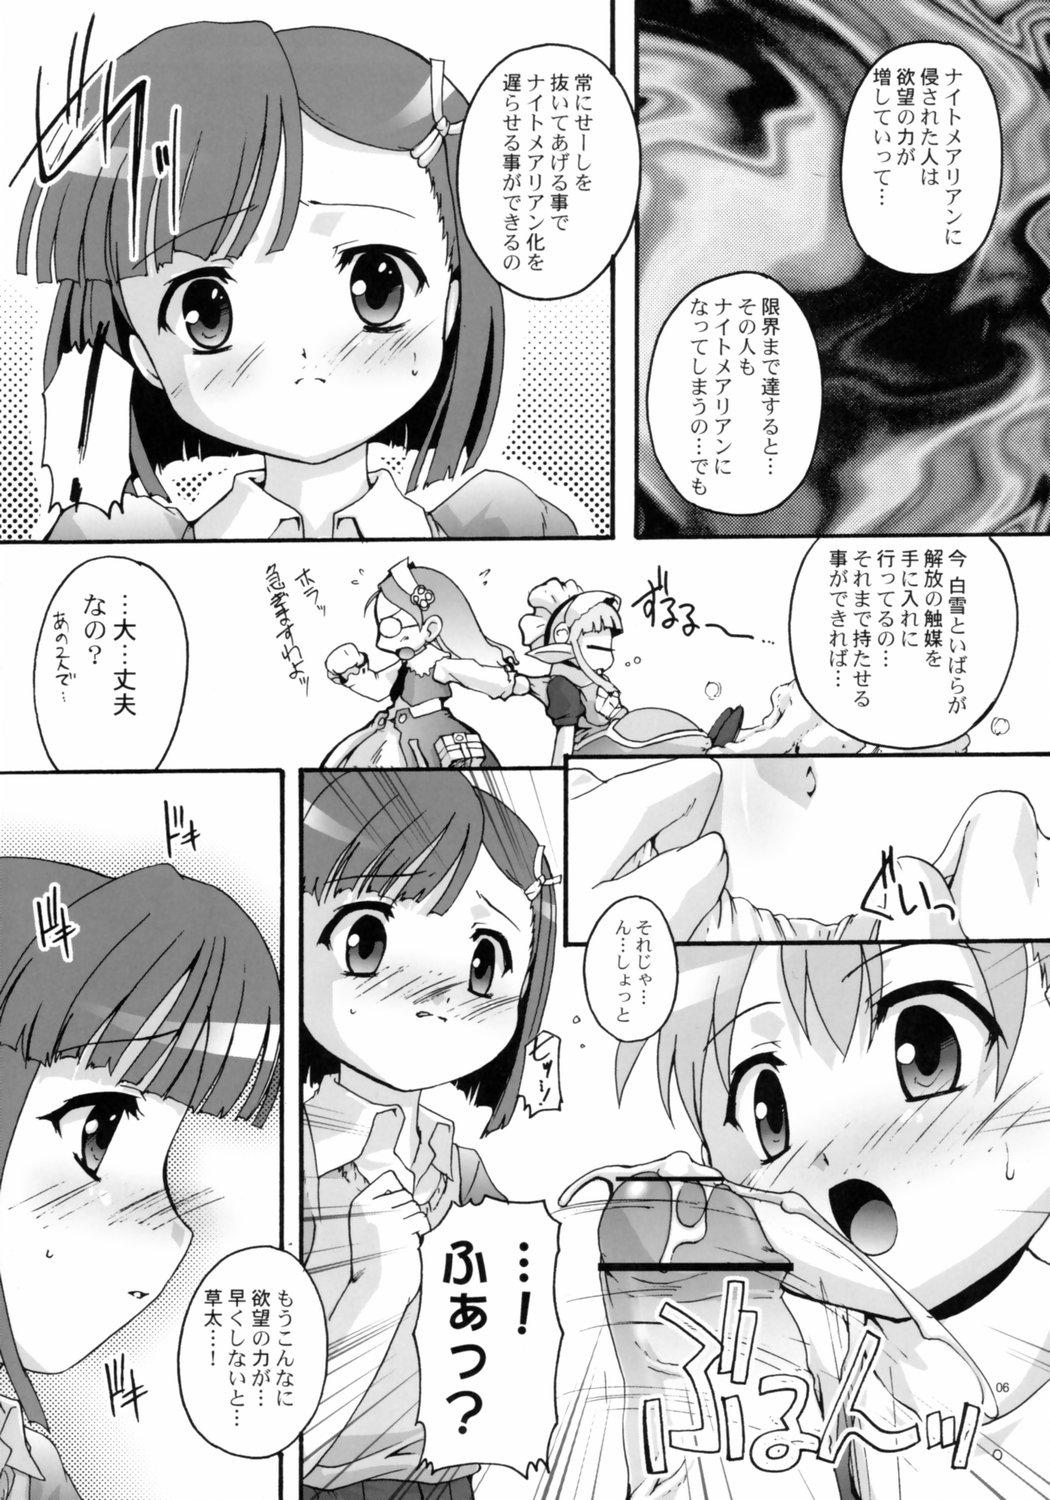 Family Kanzen Nenshou 14 - Otogi-jushi akazukin  - Page 5